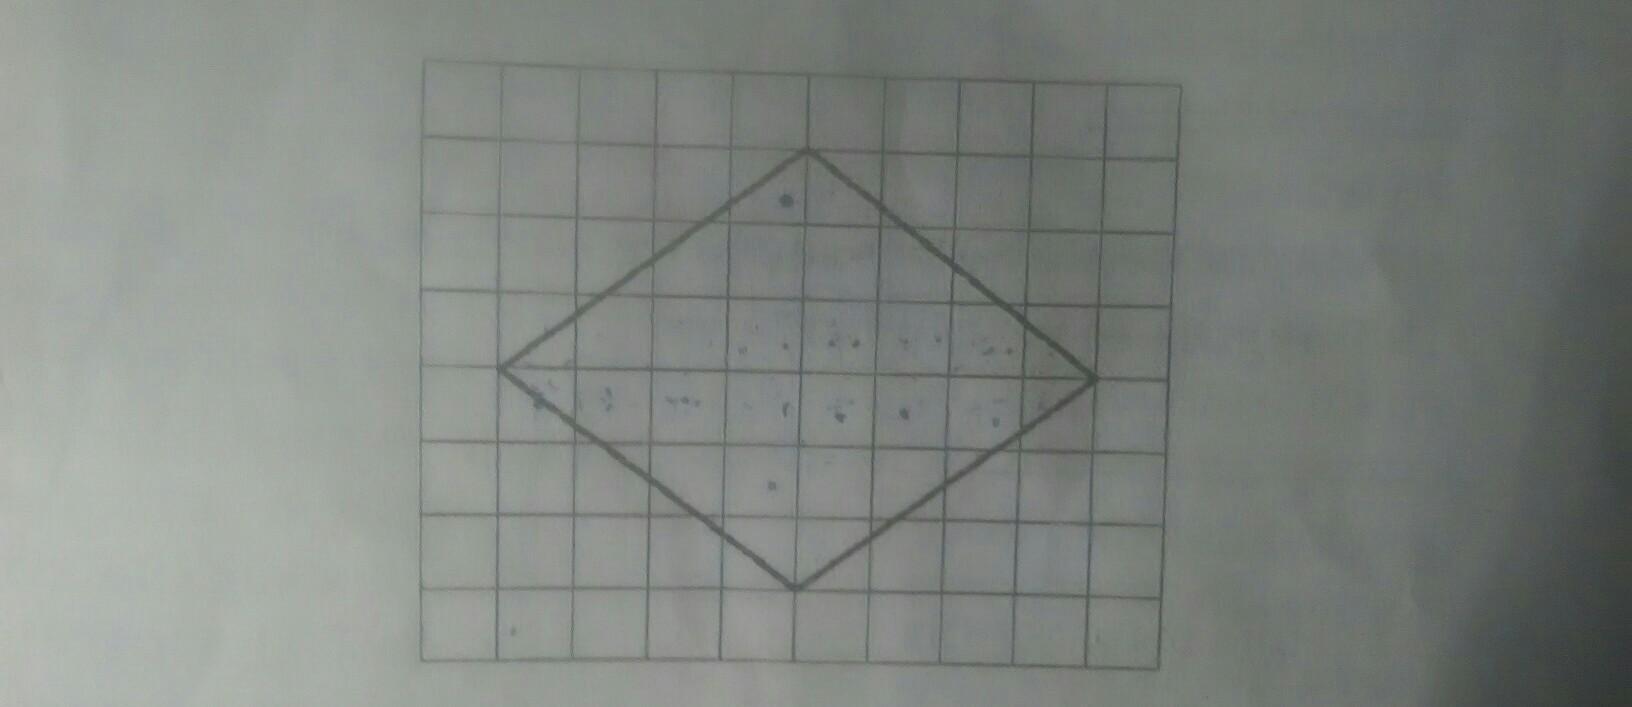 Диагональ на клетчатой бумаге